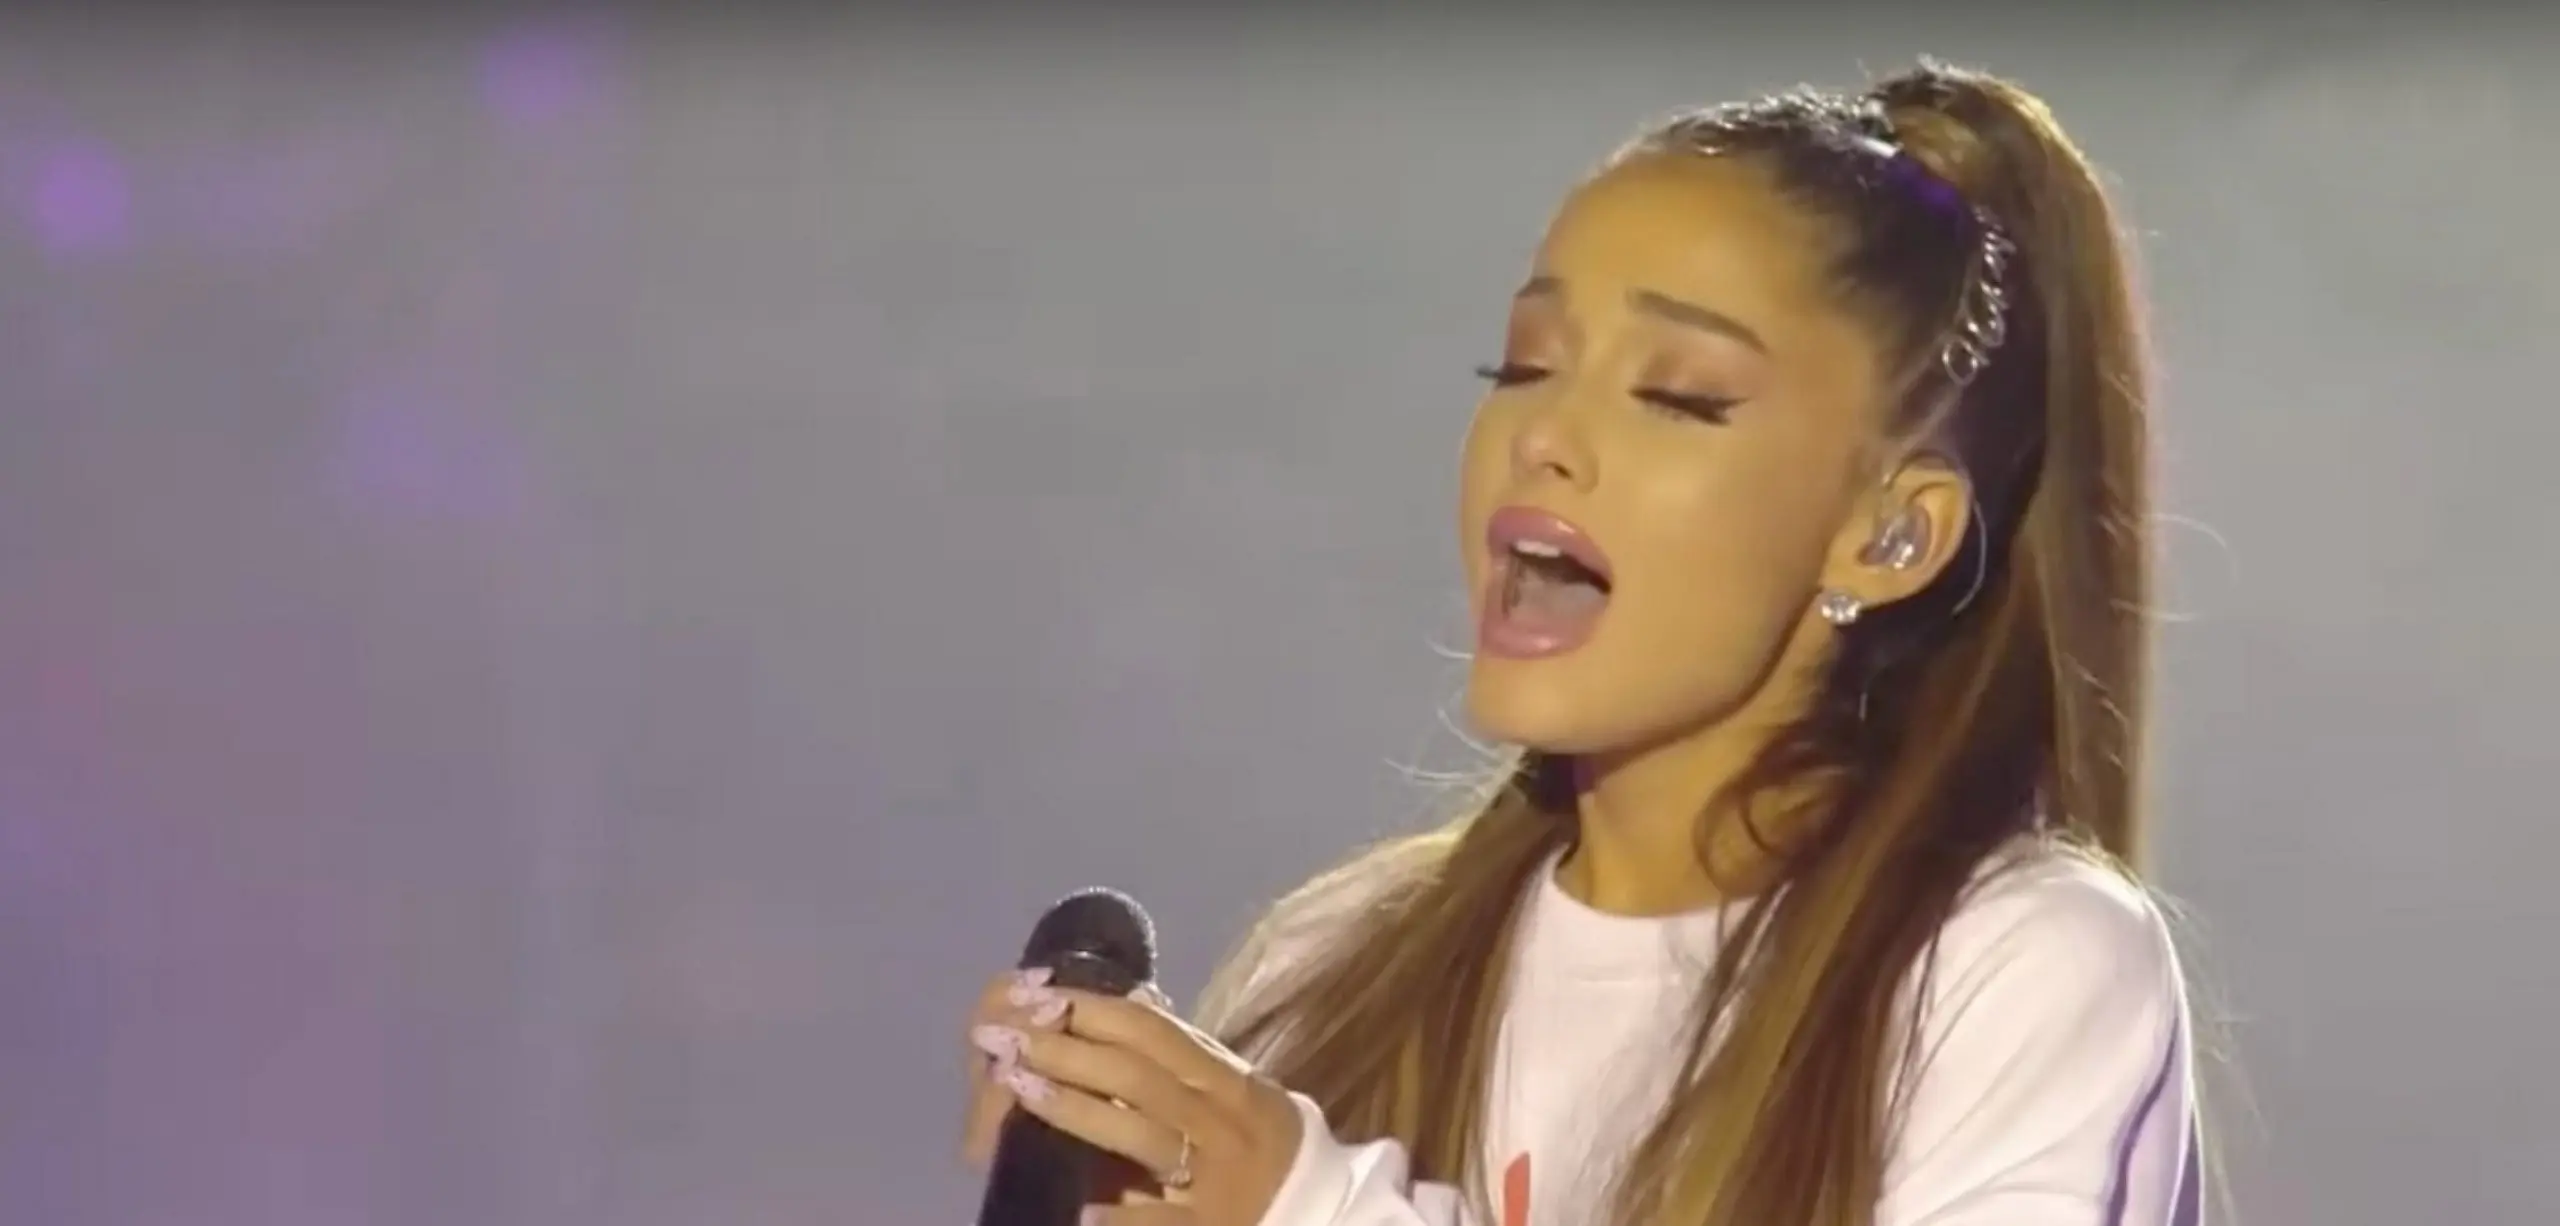 Les fans d’Ariana Grande lancent une pétition pour que sa reprise d'”Over the Rainbow” sorte en single